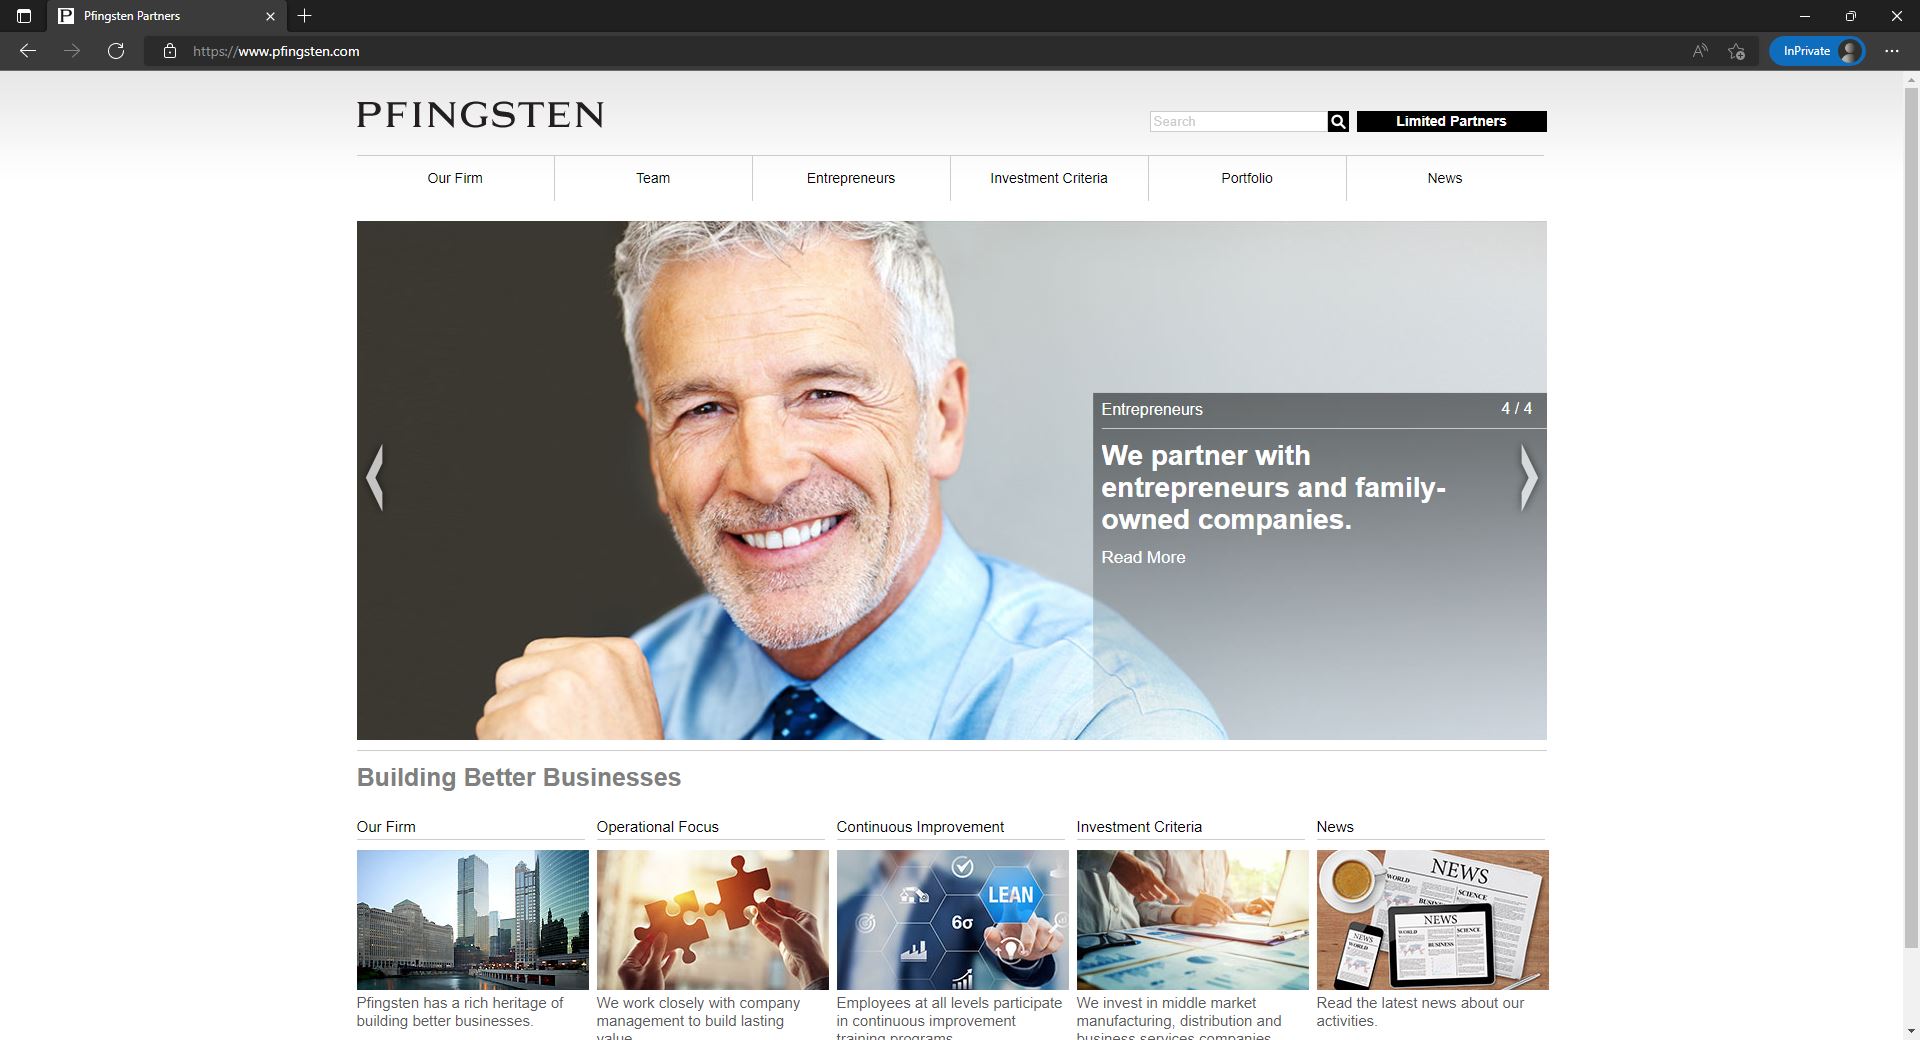 PFingsten Partners website homepage